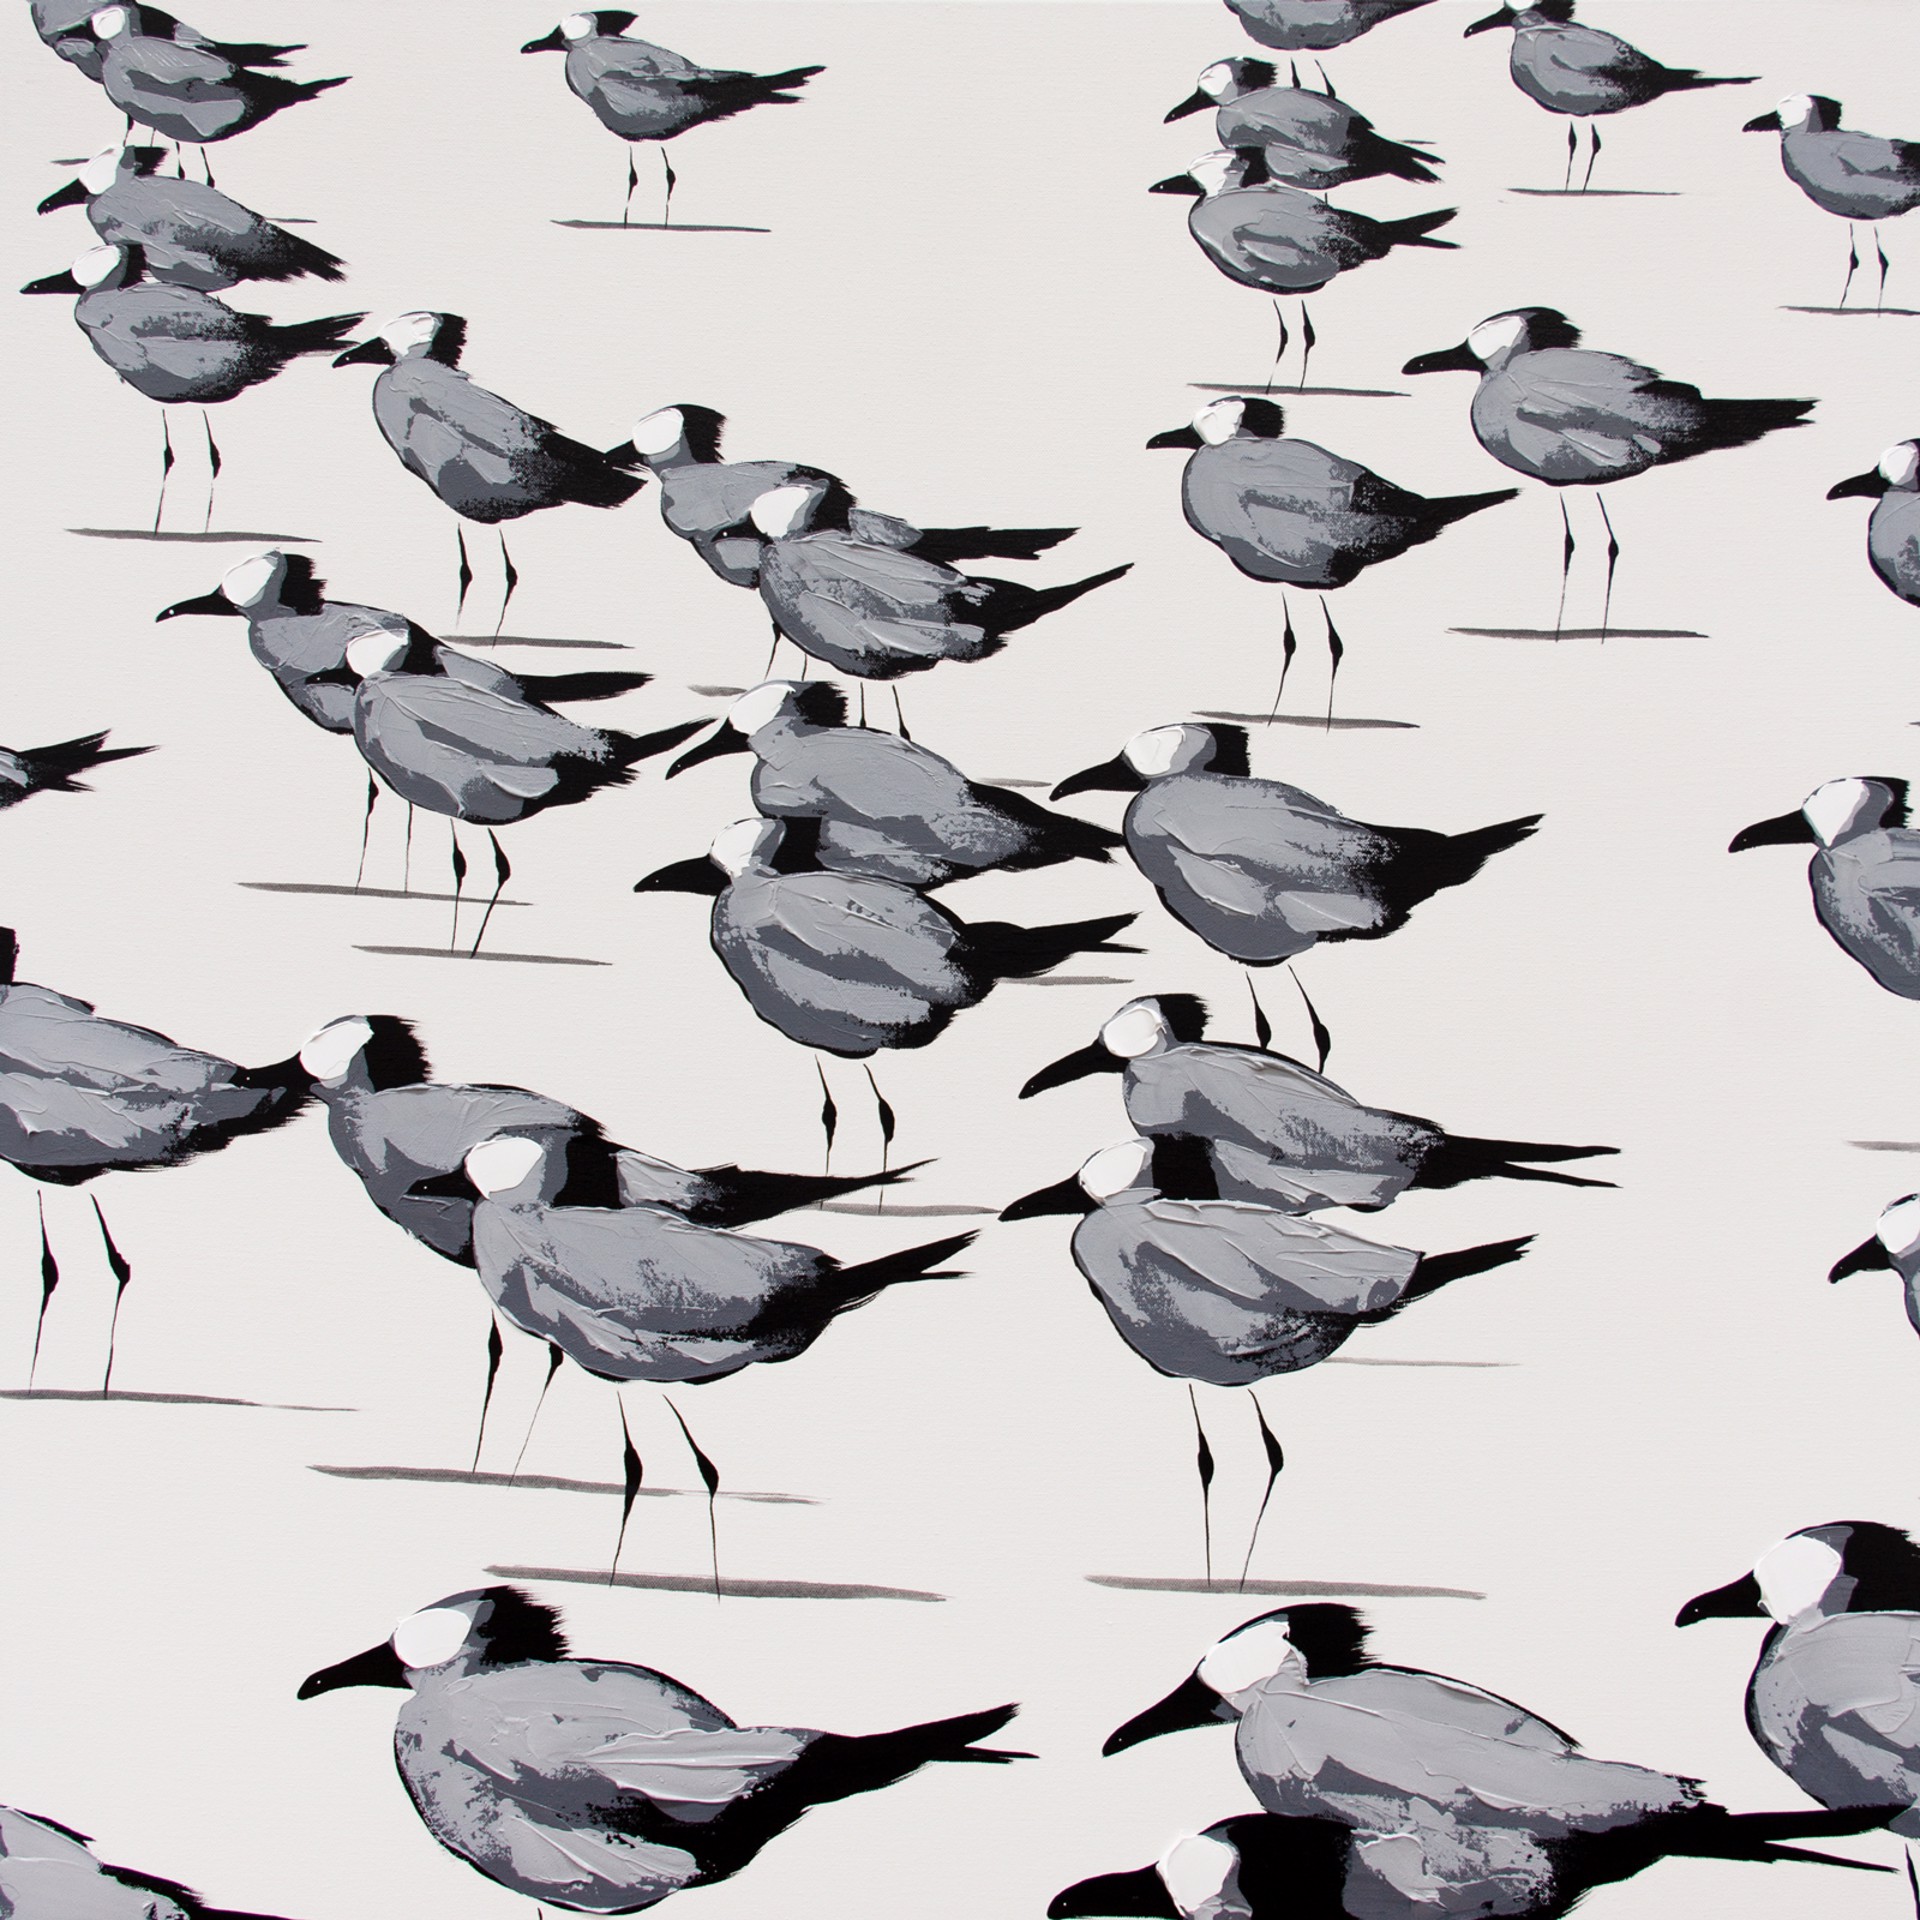 Gulls on White by Josh Brown